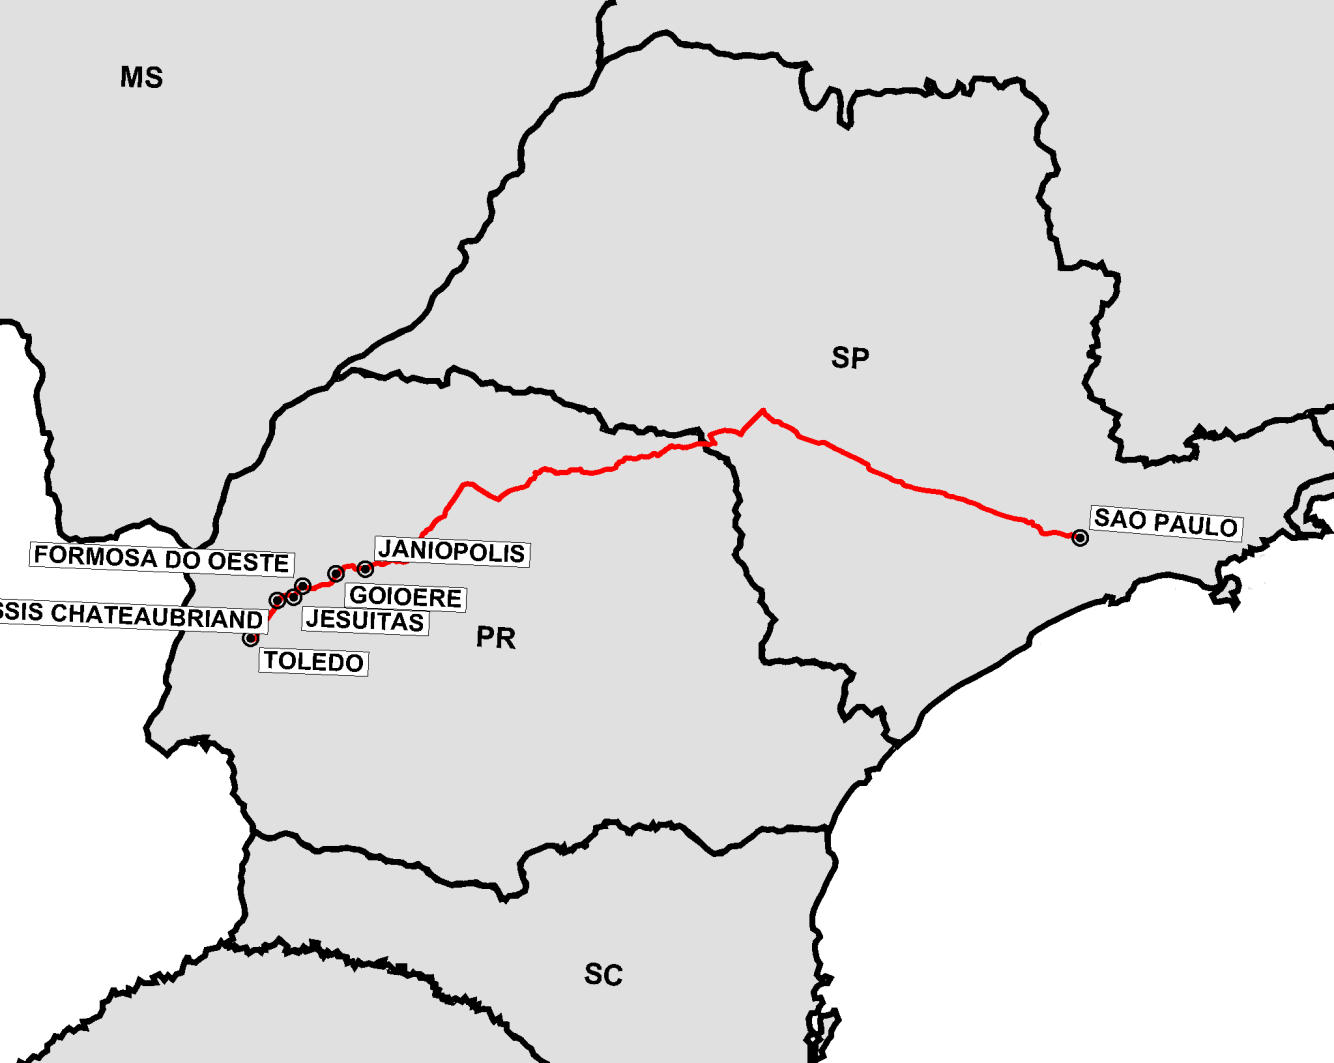 P á g i n a 3.328 3.85 TOLEDO/PR - SAO PAULO/SP O atendimento determinado pela ANTT para a linha TOLEDO/PR - SAO PAULO/SP deverá ser realizado, conforme mostrado nos subitens seguintes. 3.85.1 Caracterização Física da Linha A linha entre as cidades de TOLEDO/PR e SAO PAULO/SP possui extensão de 907,02 km e está inserida no(s) Lote(s) 2 do Grupo 10.